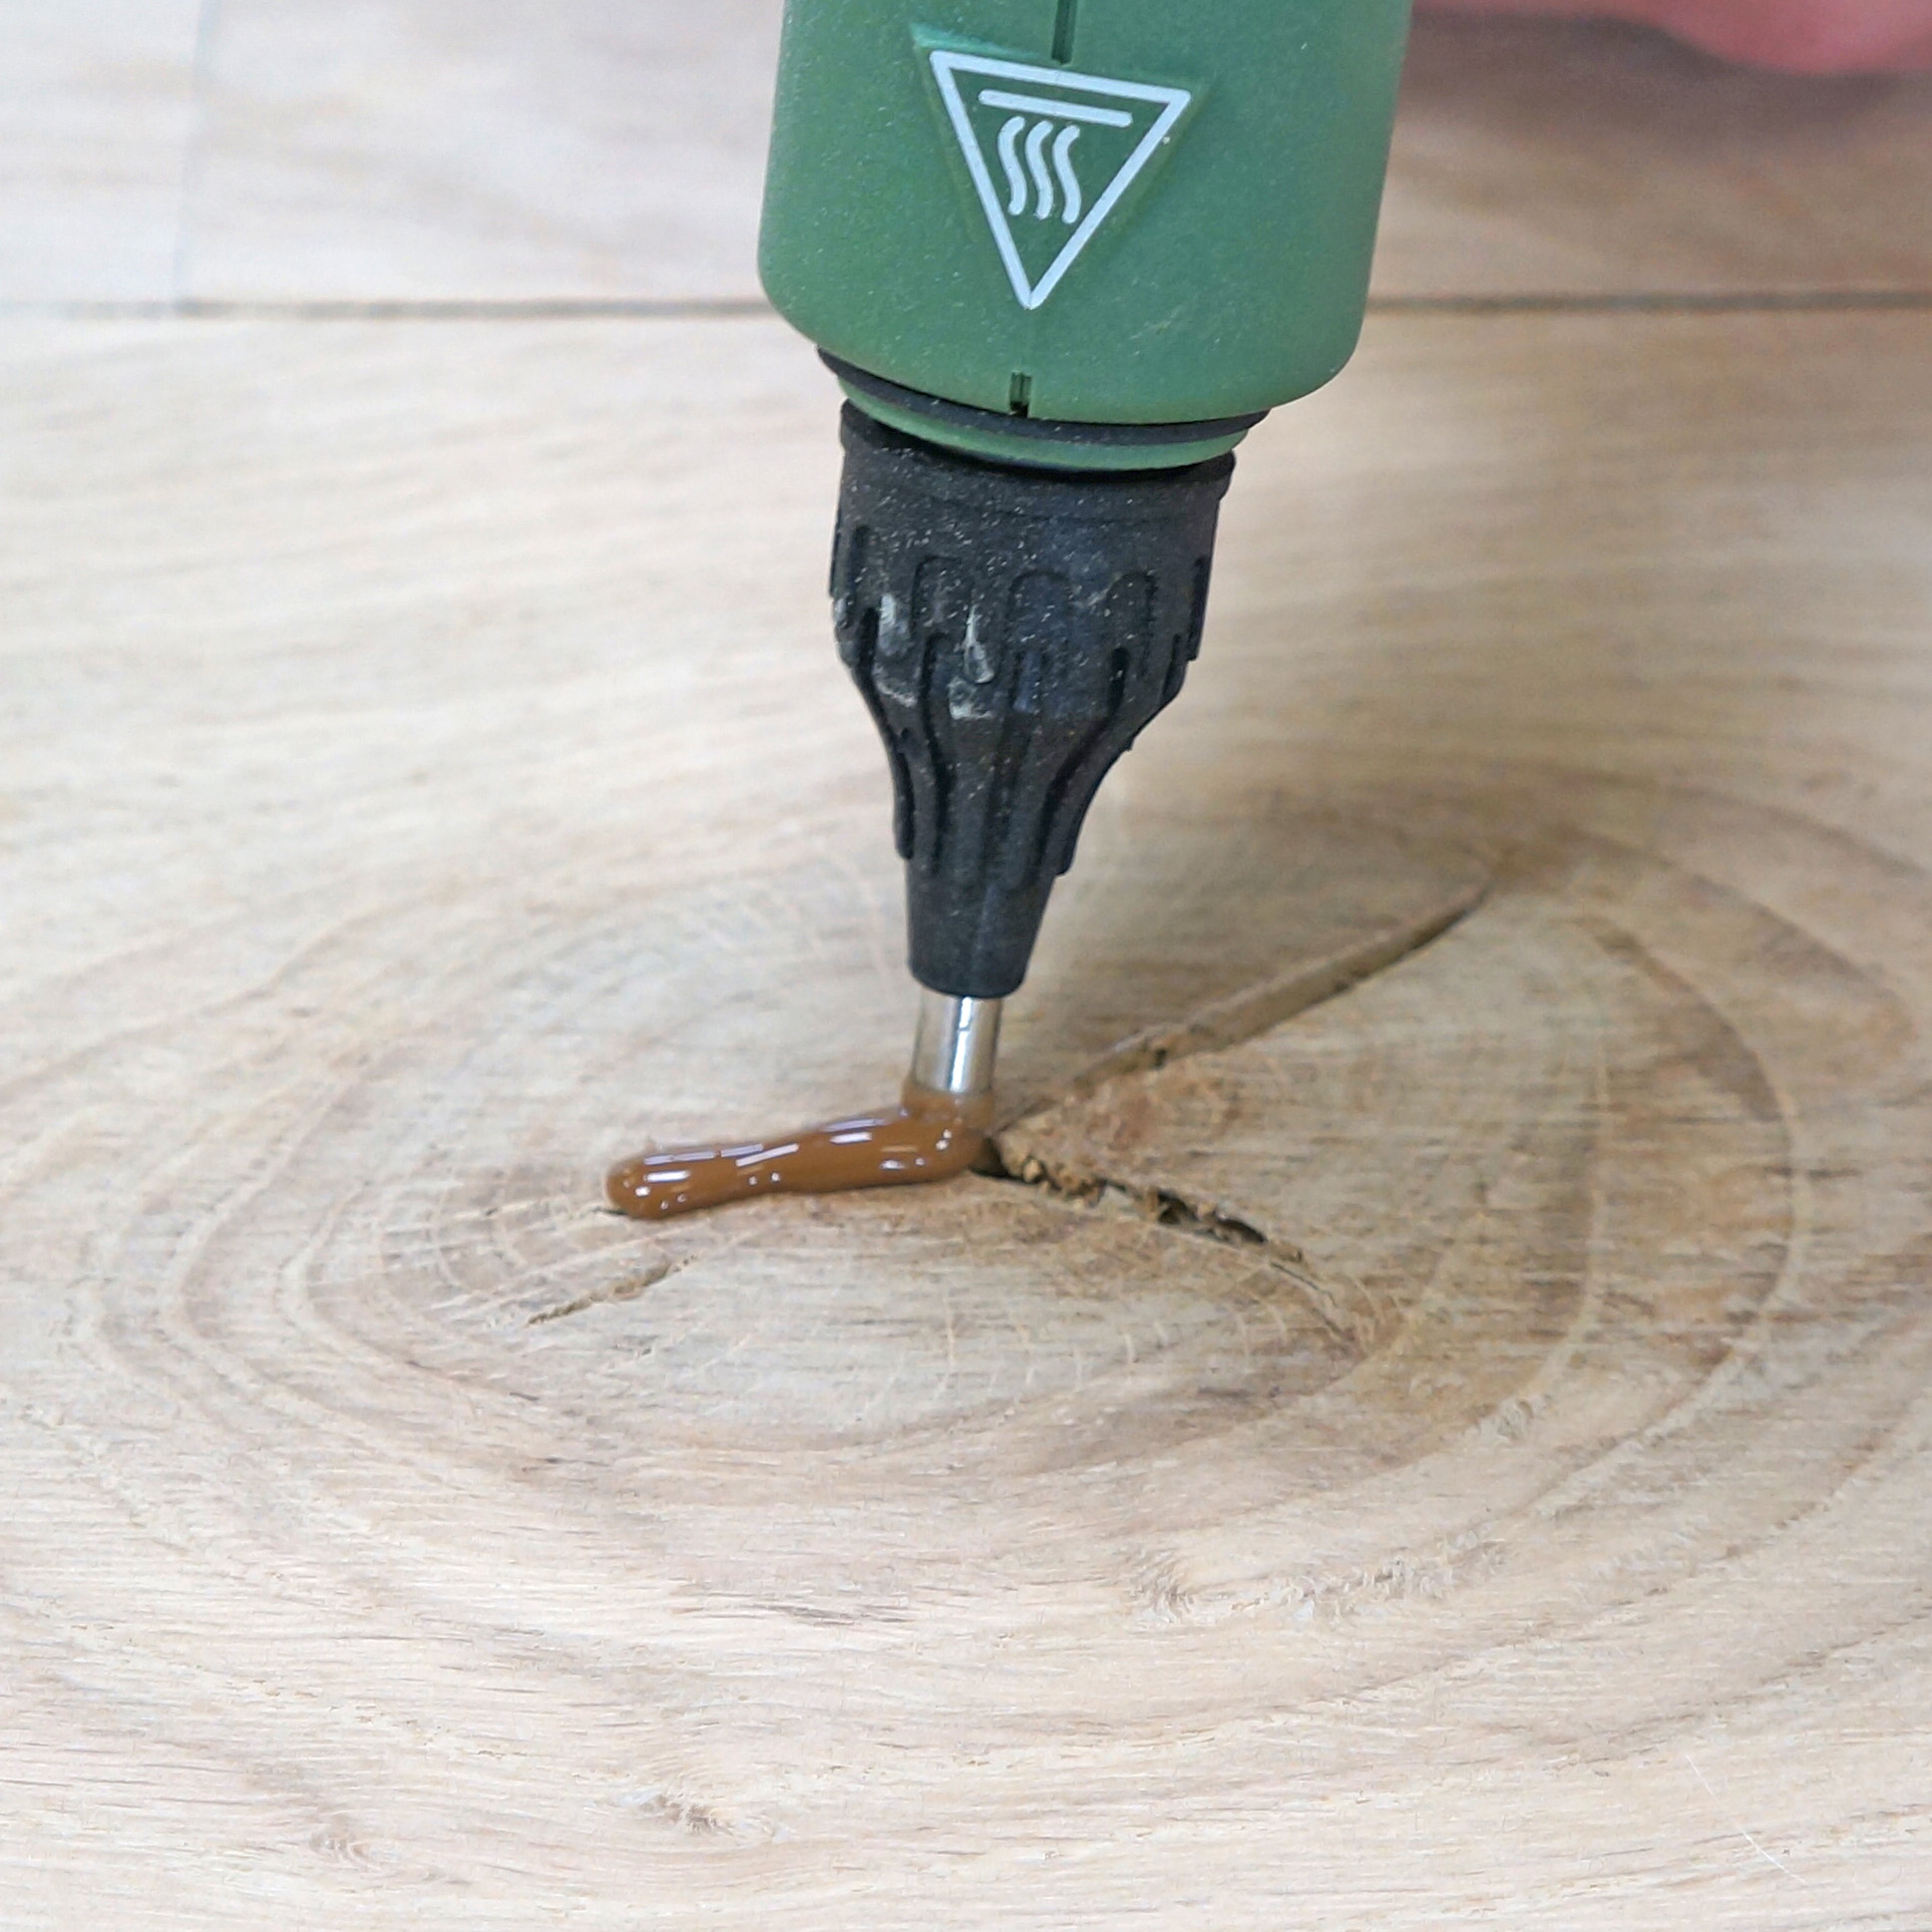 Wood repair kit inalambrico